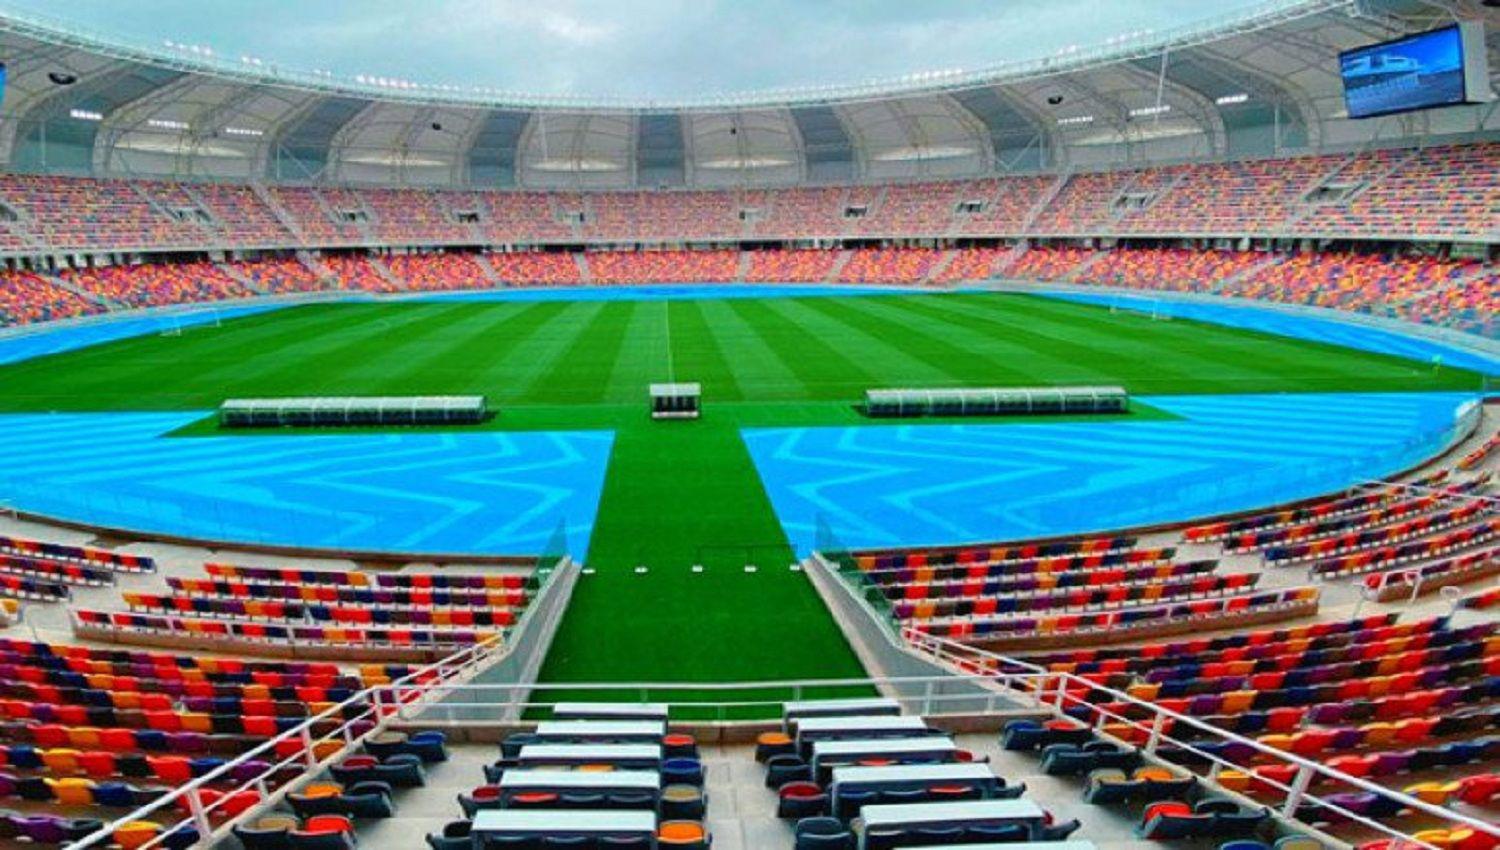 CONFIRMADO- El Estadio Uacutenico seraacute sede de la final de la Copa de la Liga Profesional